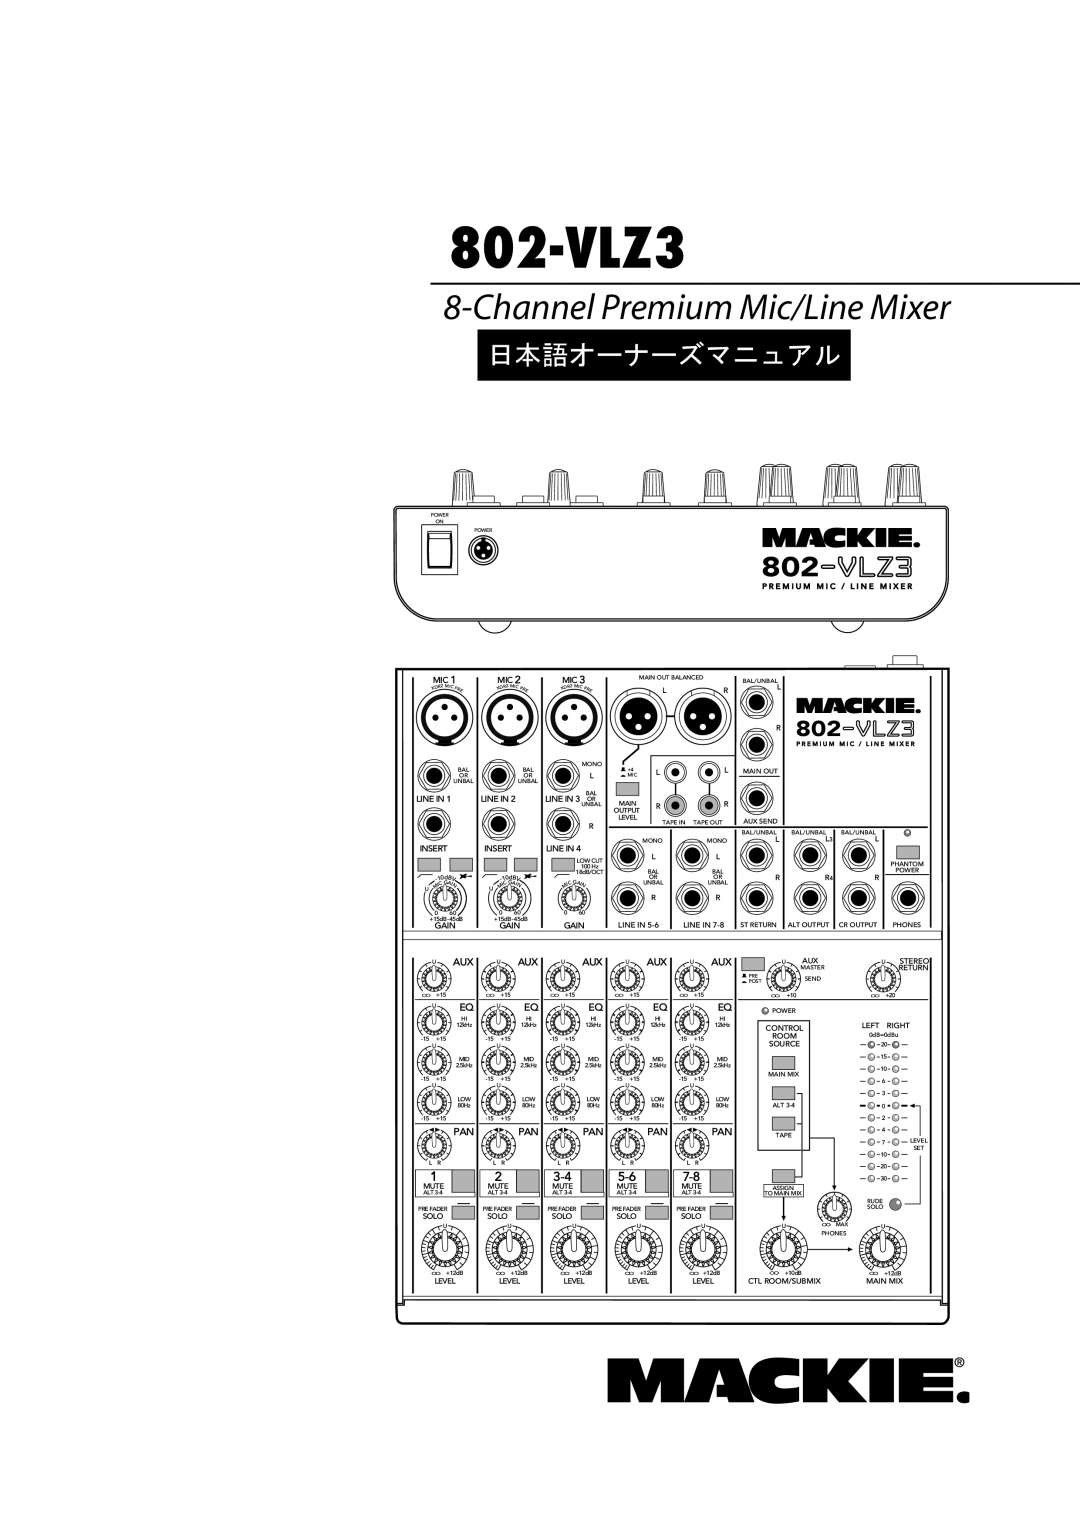 Mackie 802-VLZ3 manual 日本語オーナーズマニュアル, Channel Premium Mic/Line Mixer 